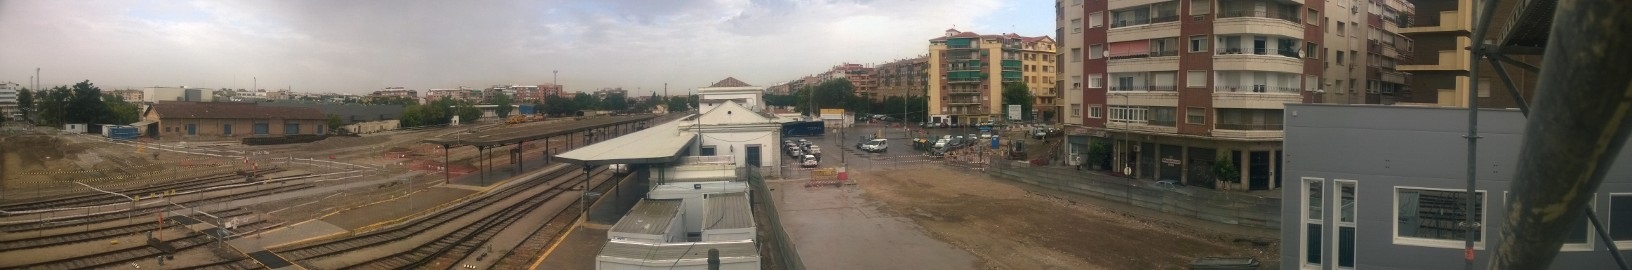 Metro de Granada concluye la demolición de los edificios de ADIF anexos a la estación de ferrocarriles